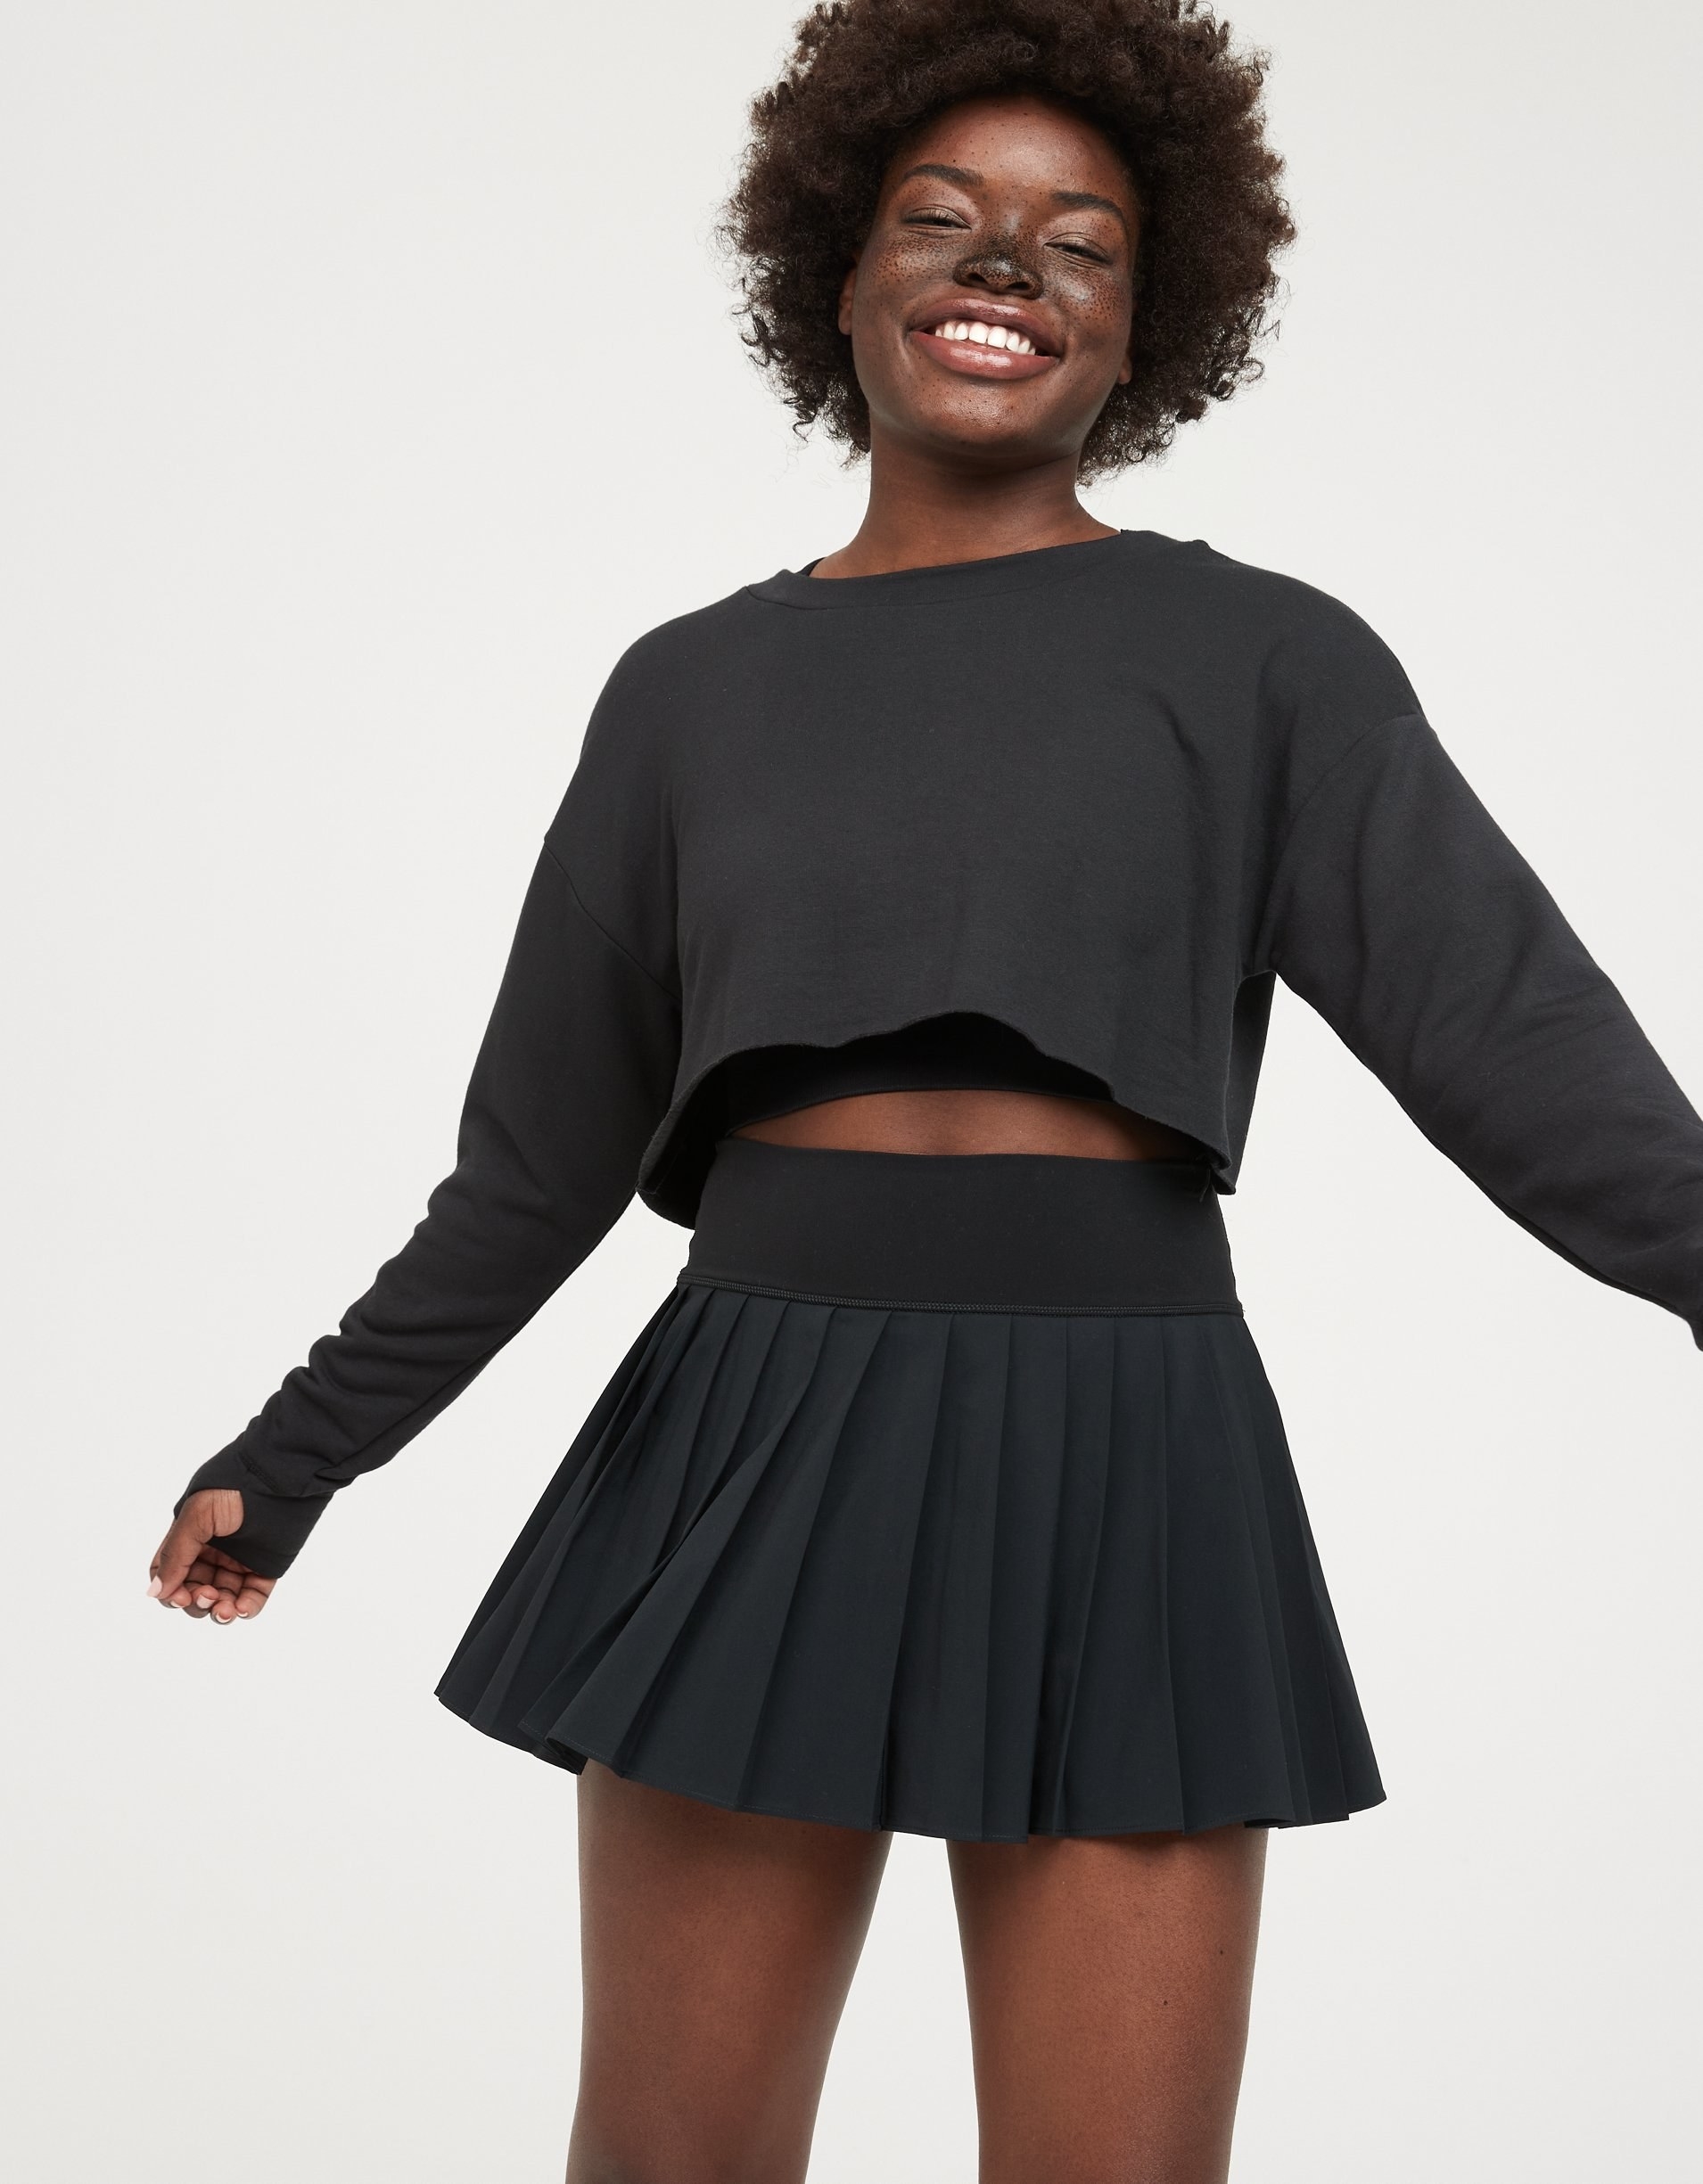 model in short black pleated tennis skirt